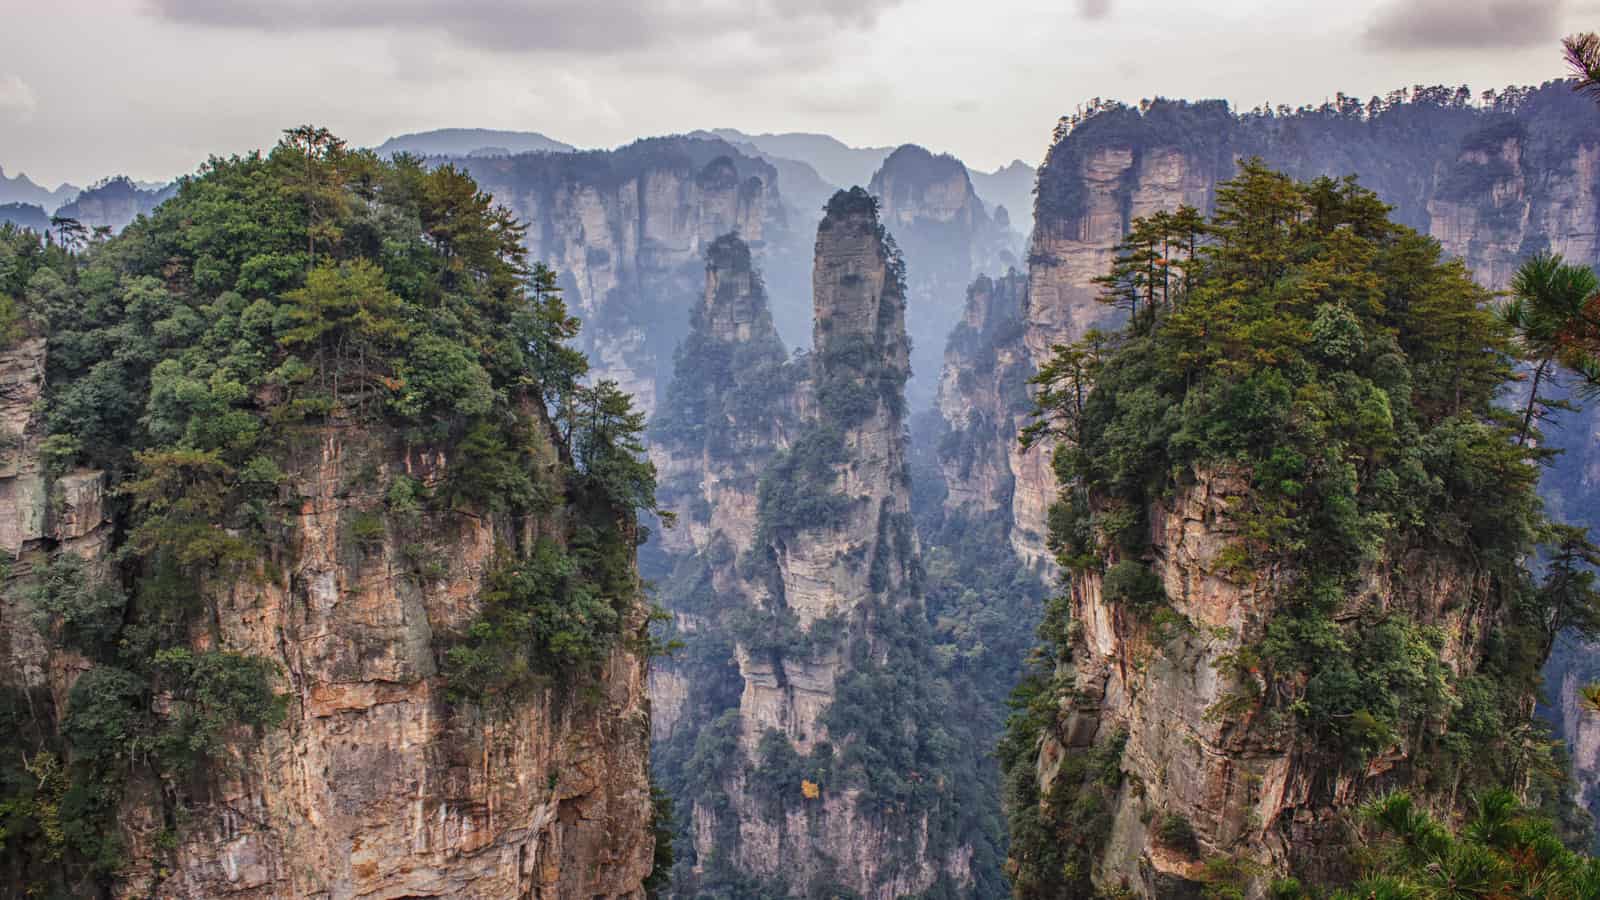 Snapshot: Avatar Hallelujah Mountain in Zhangjiajie, China